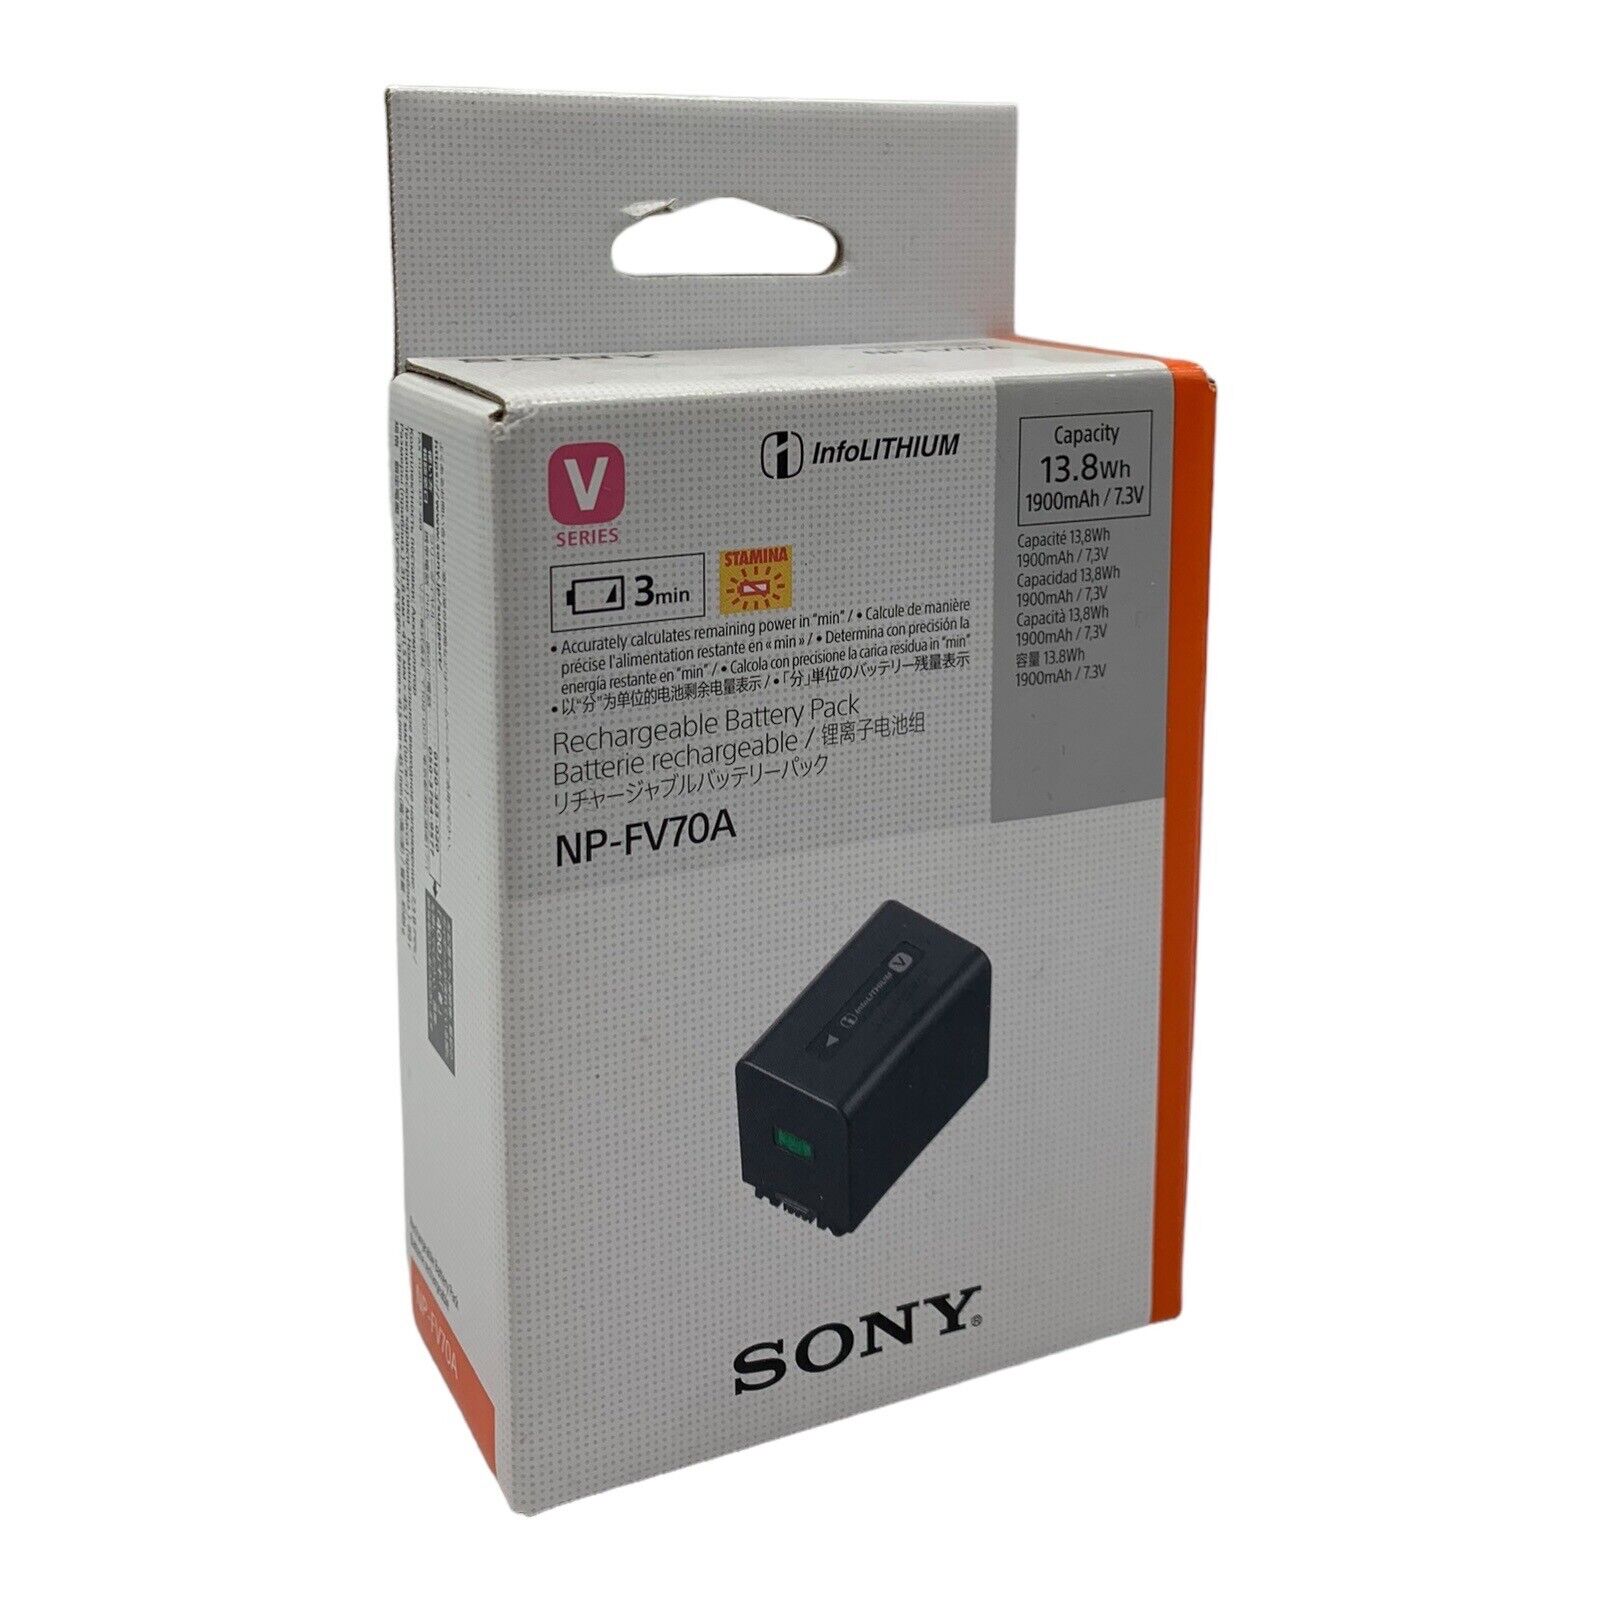 Sony NP-FV70A Li-Ion Akku für V-Serie Akku 1900 mAh Lithium-Ionen-Akku NEU OVP